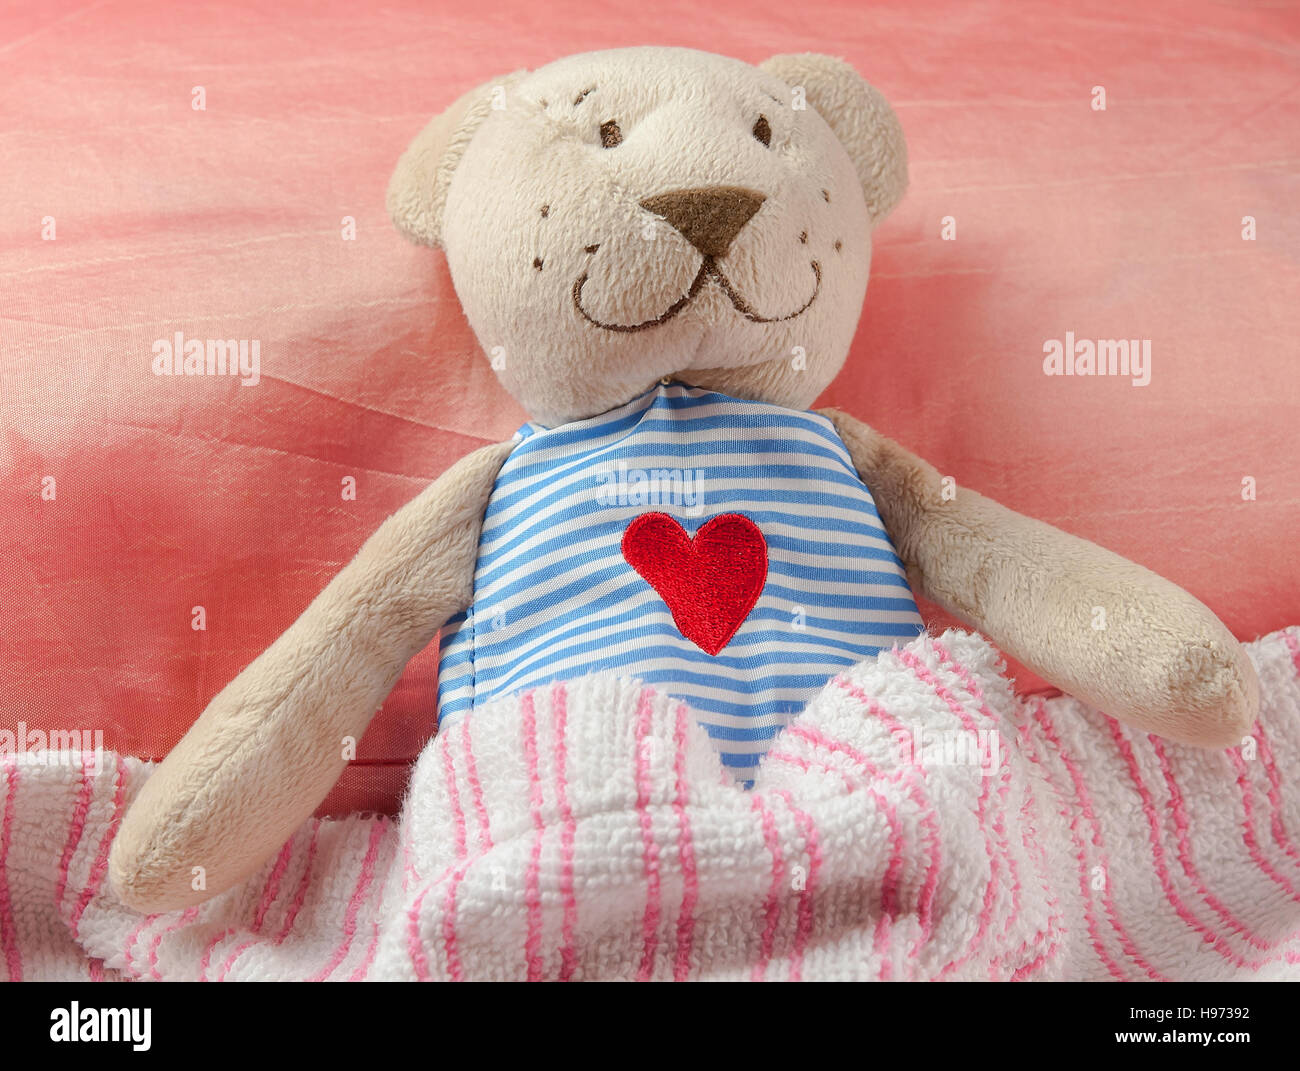 liebenswert Teddybär im Bett, unter der Bettdecke. Stockfoto